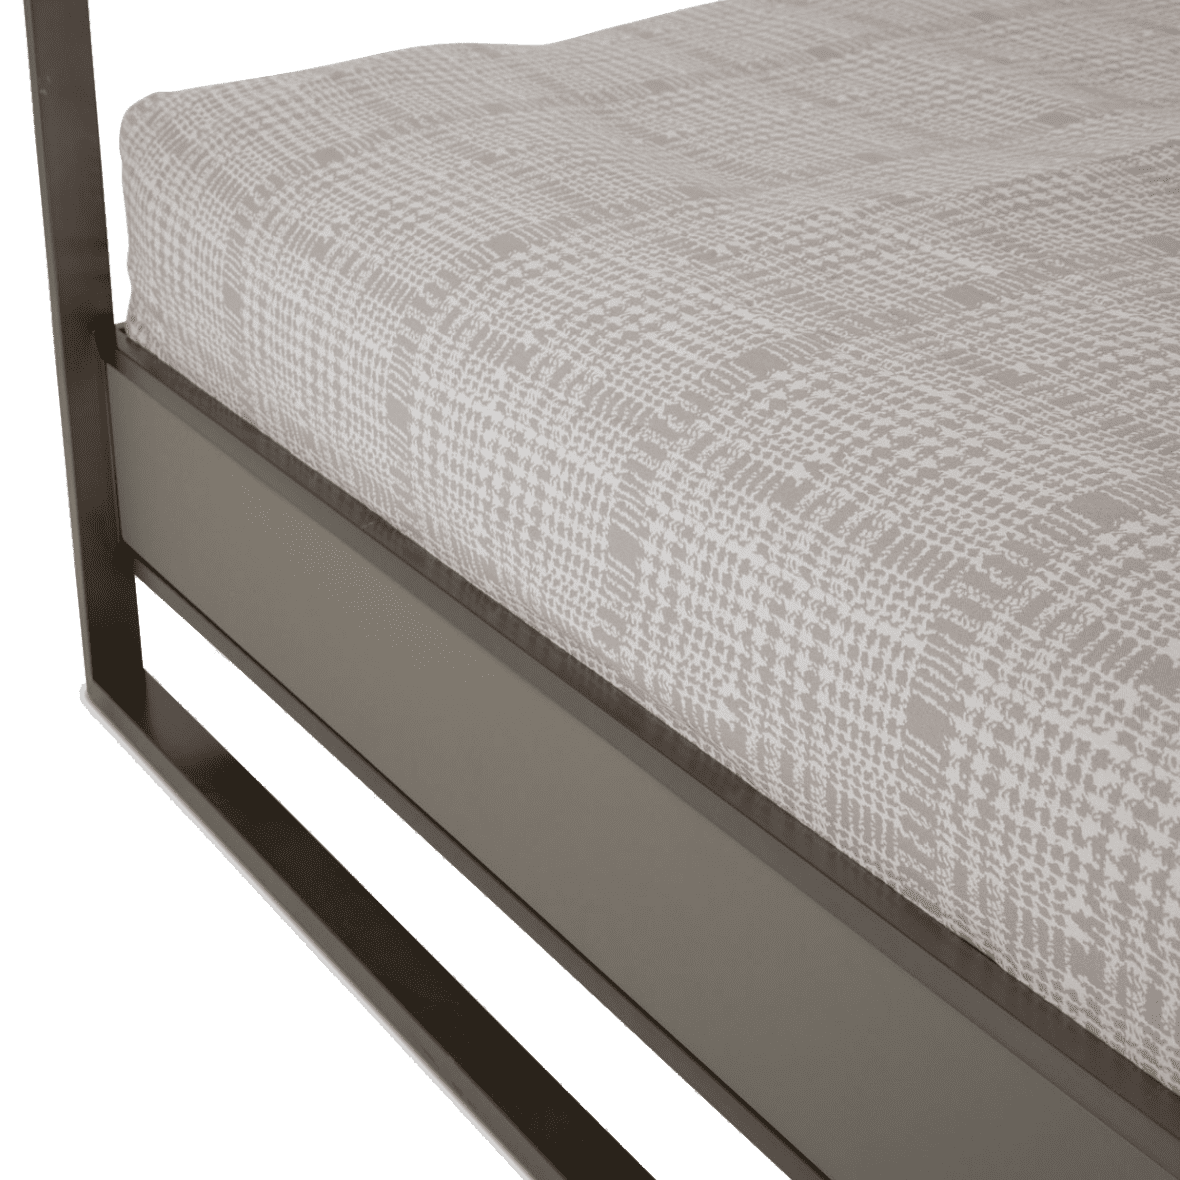 Кровать с декоративным балдахином с подсветкой, размер Eastern King